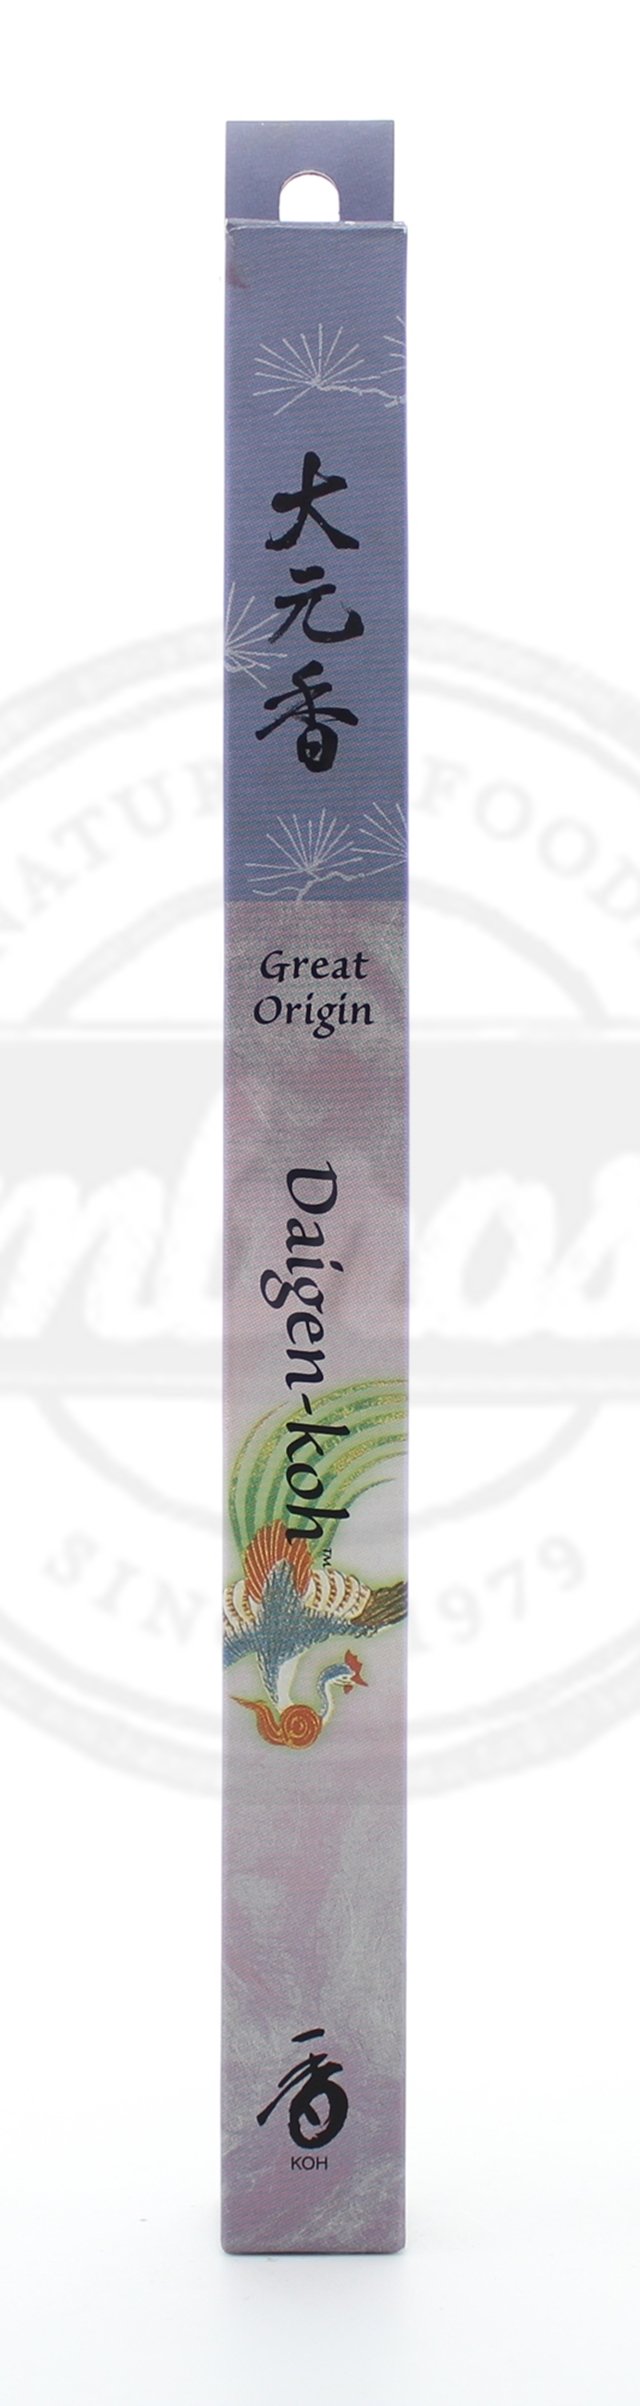 Great Origin Incense